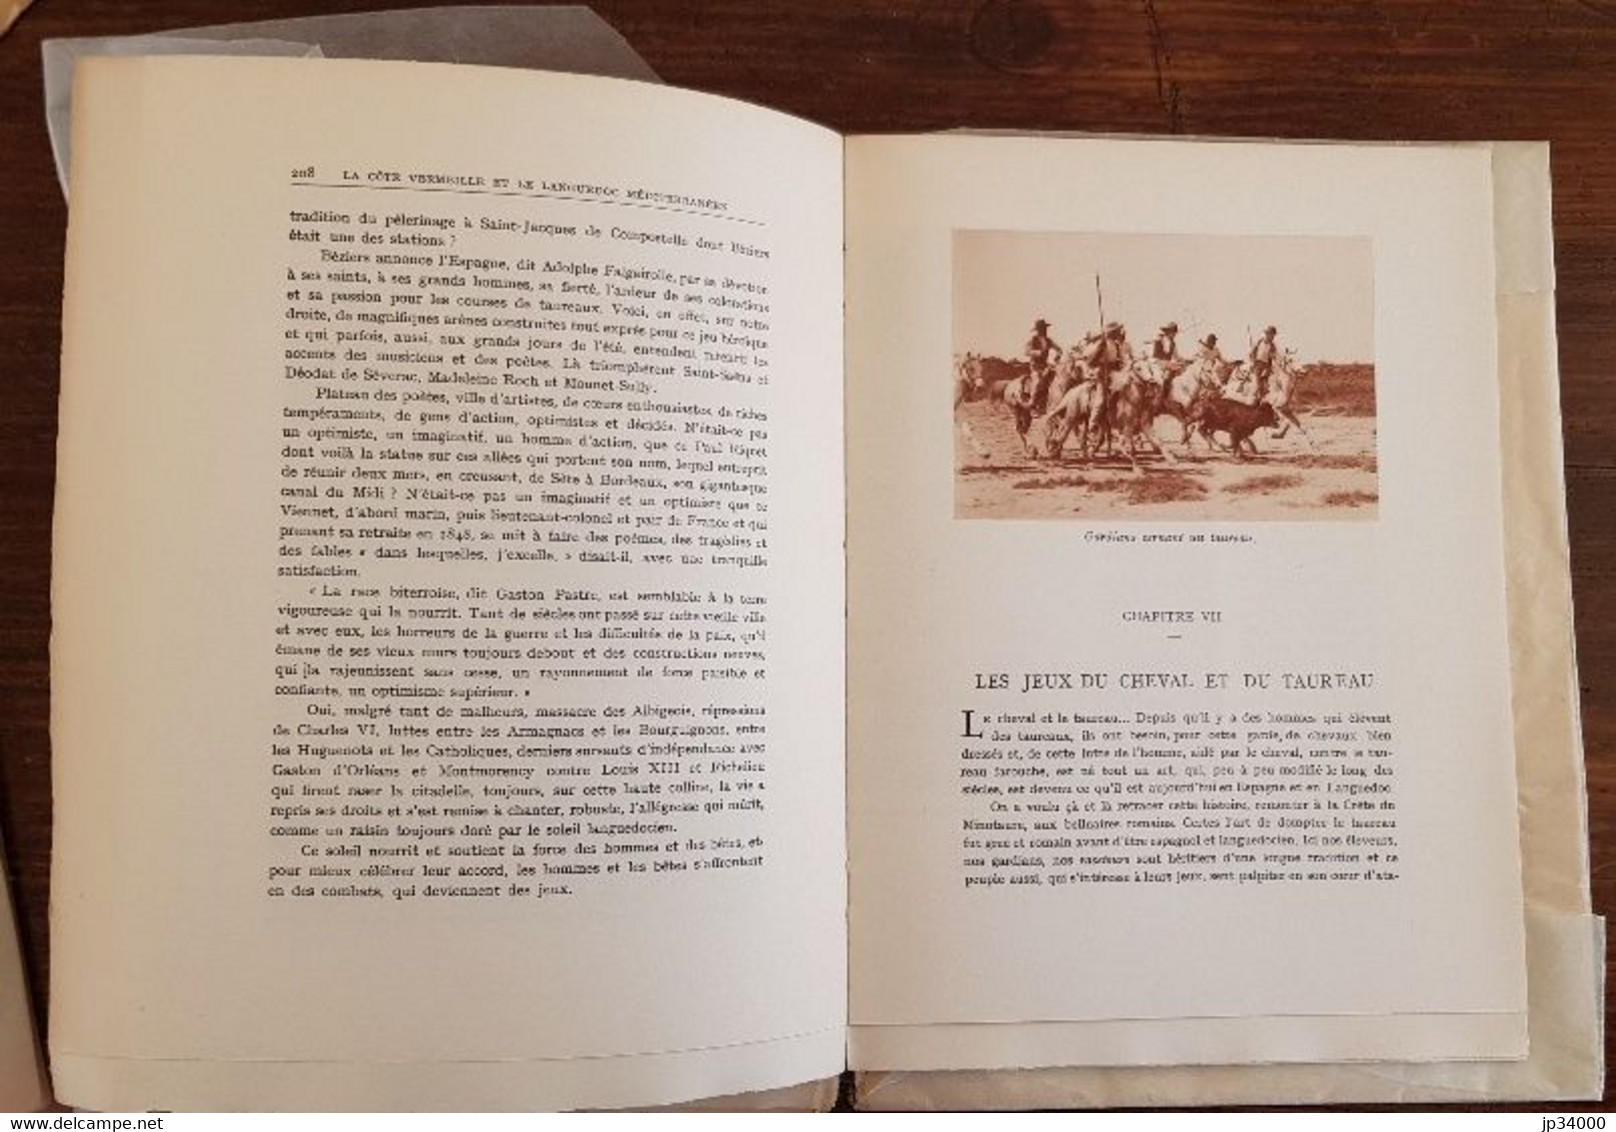 LA COTE VERMEILLE ET LE LANGUEDOC MEDITERRANEEN par Emile RIPERT 1931(languedoc, occitanie)